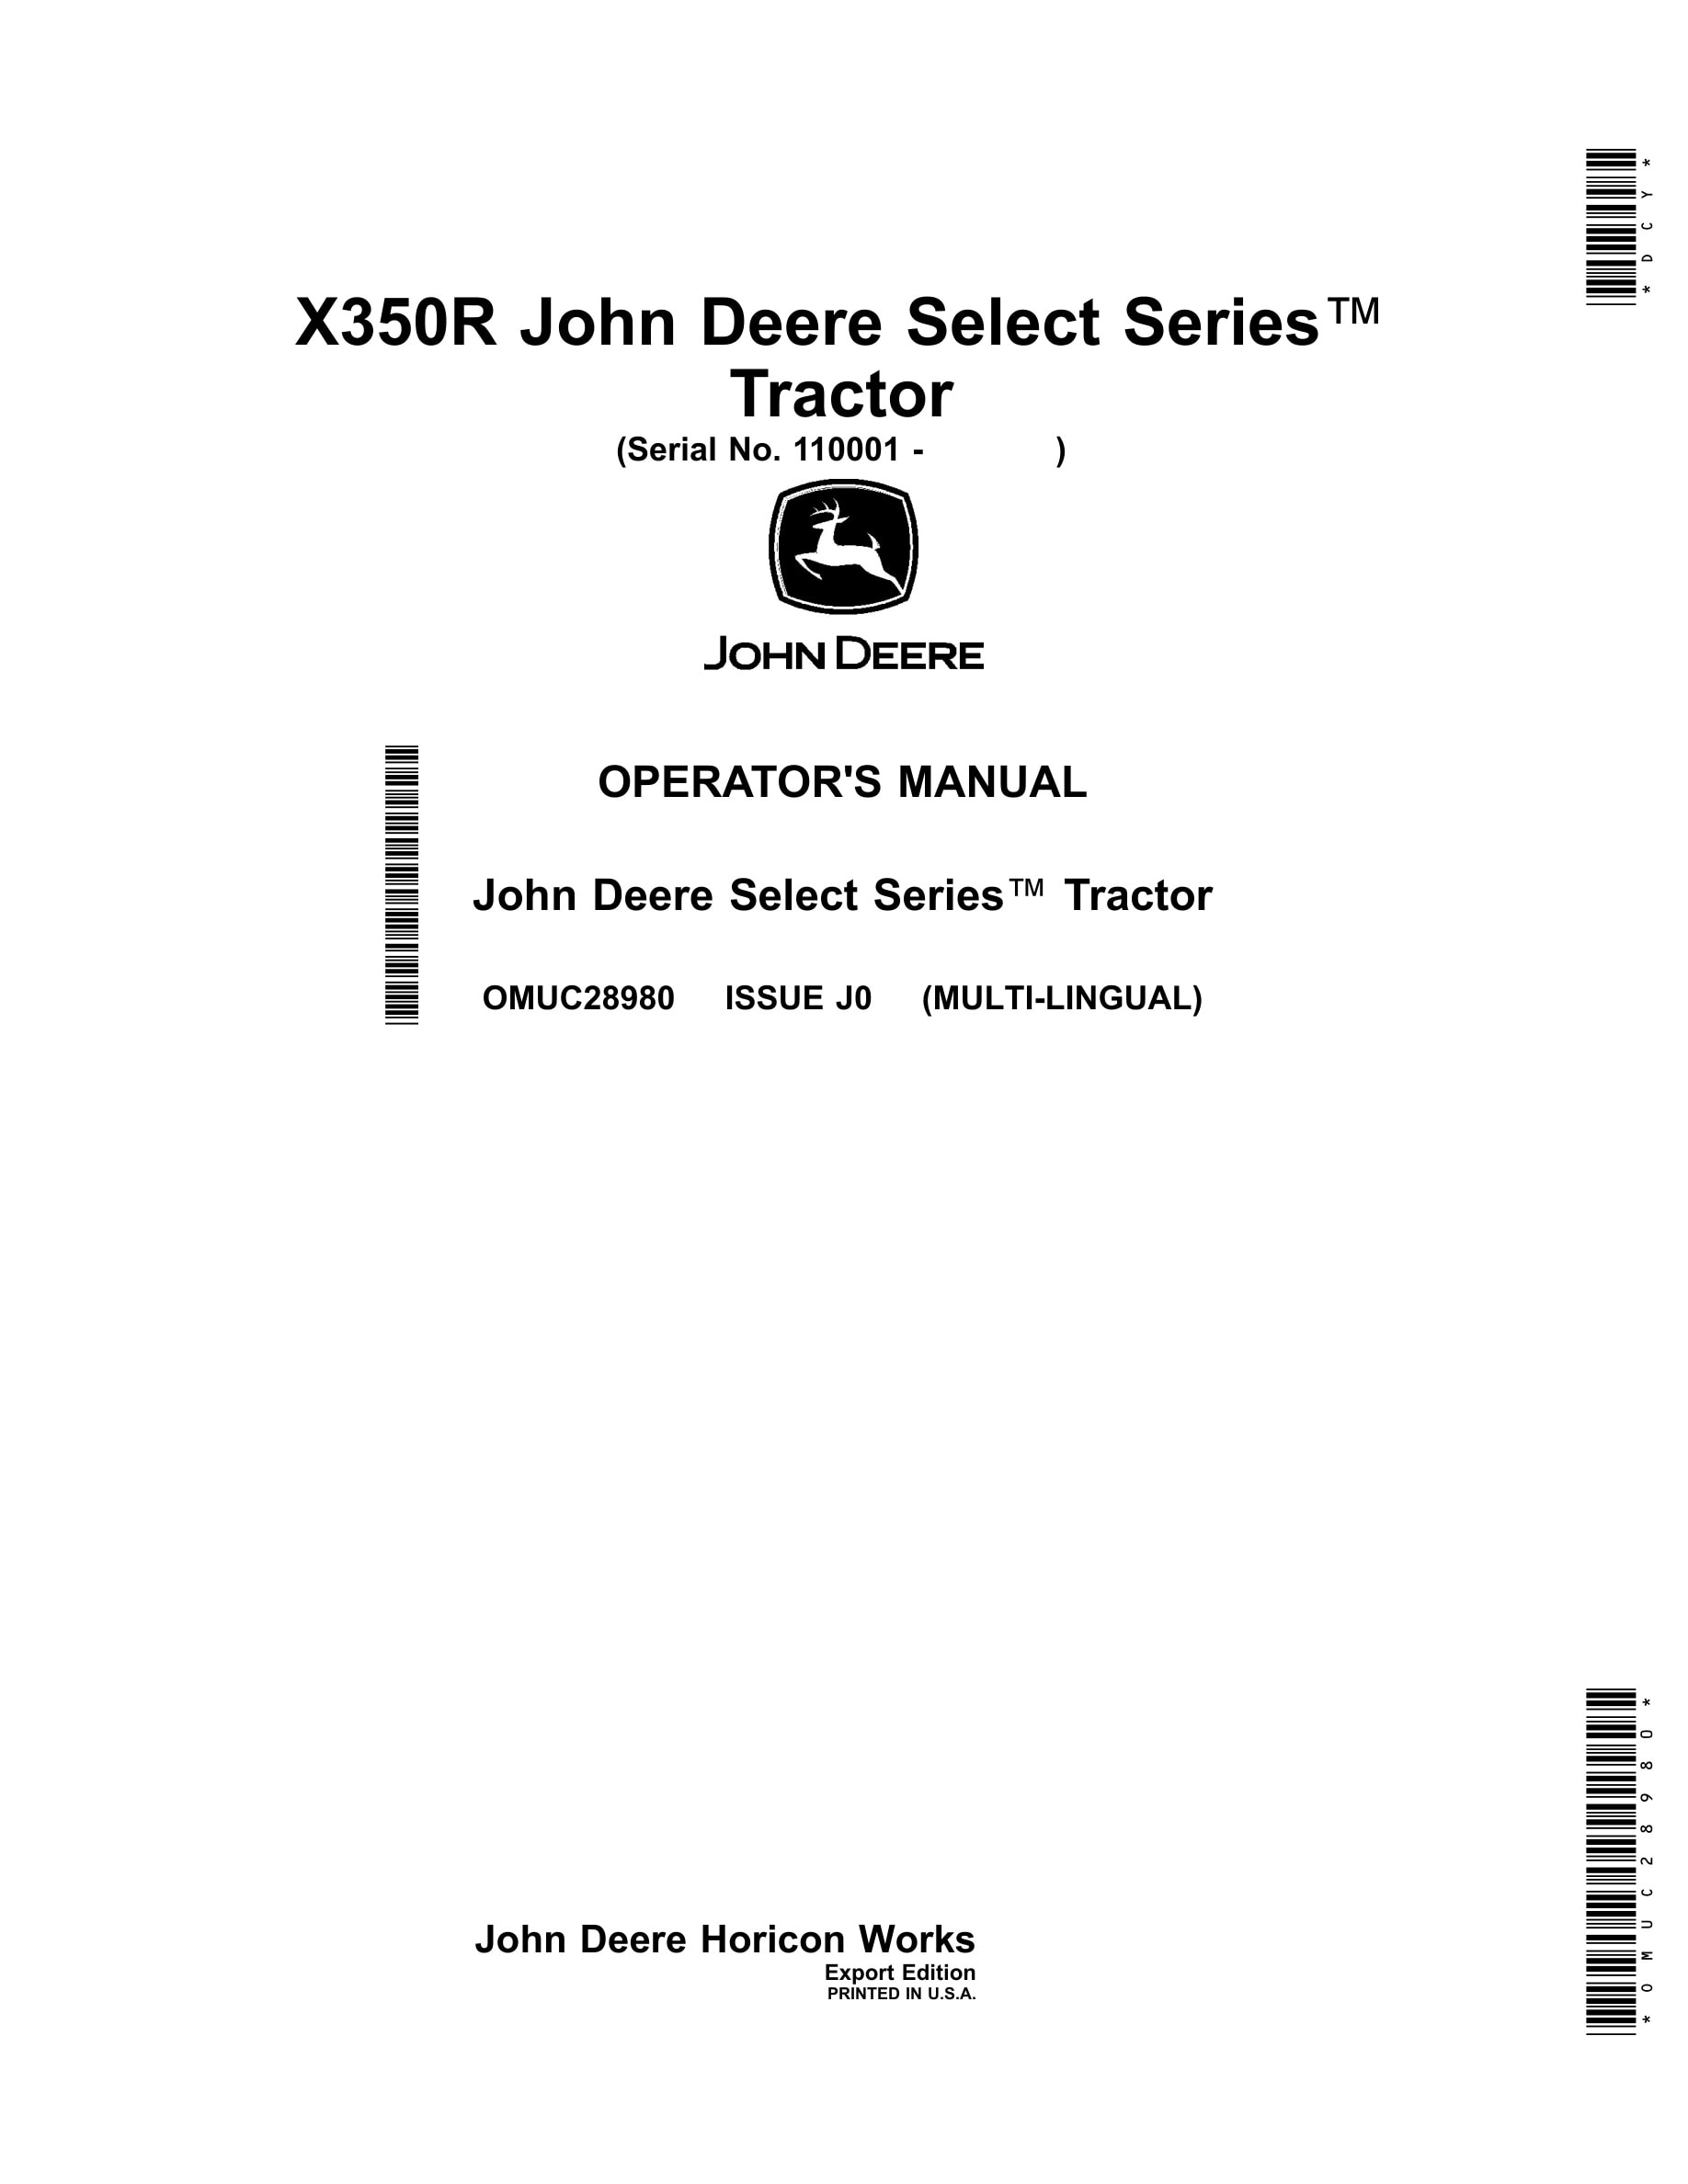 John Deere X350r Tractors Operator Manuals OMUC28980-1